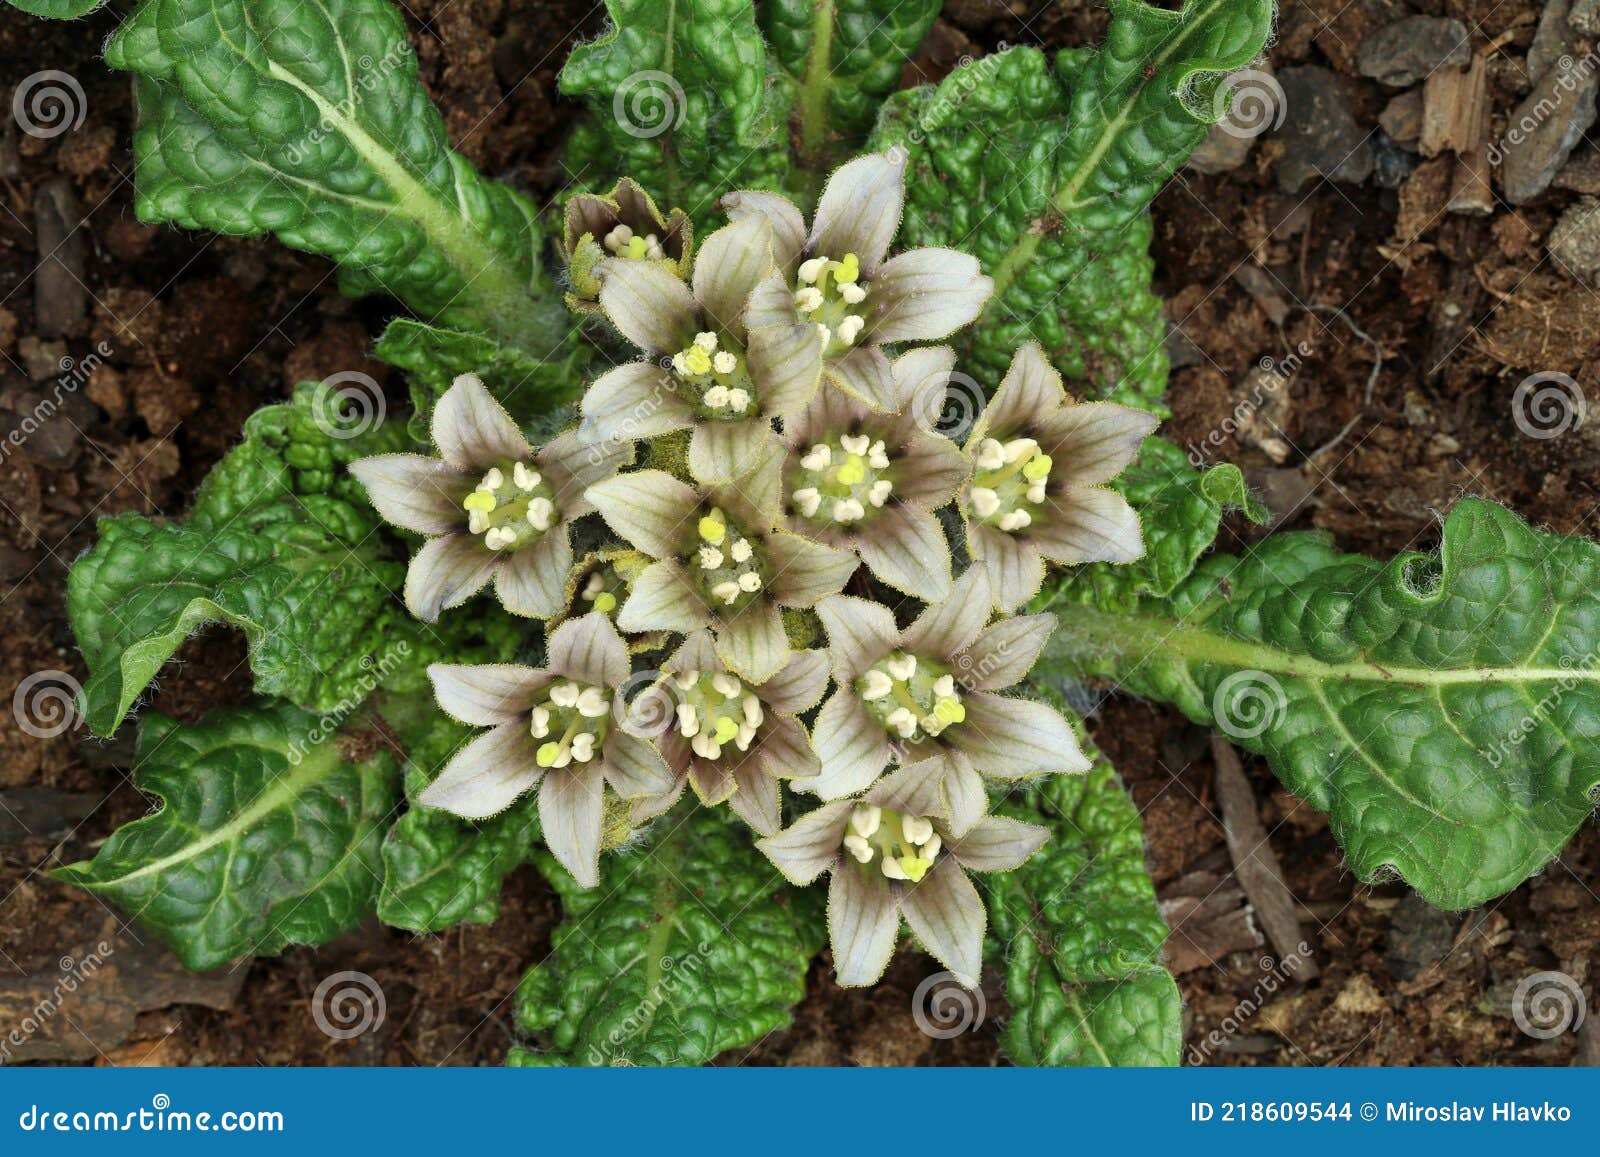 56 fotos de stock e banco de imagens de Mandrake Flower - Getty Images